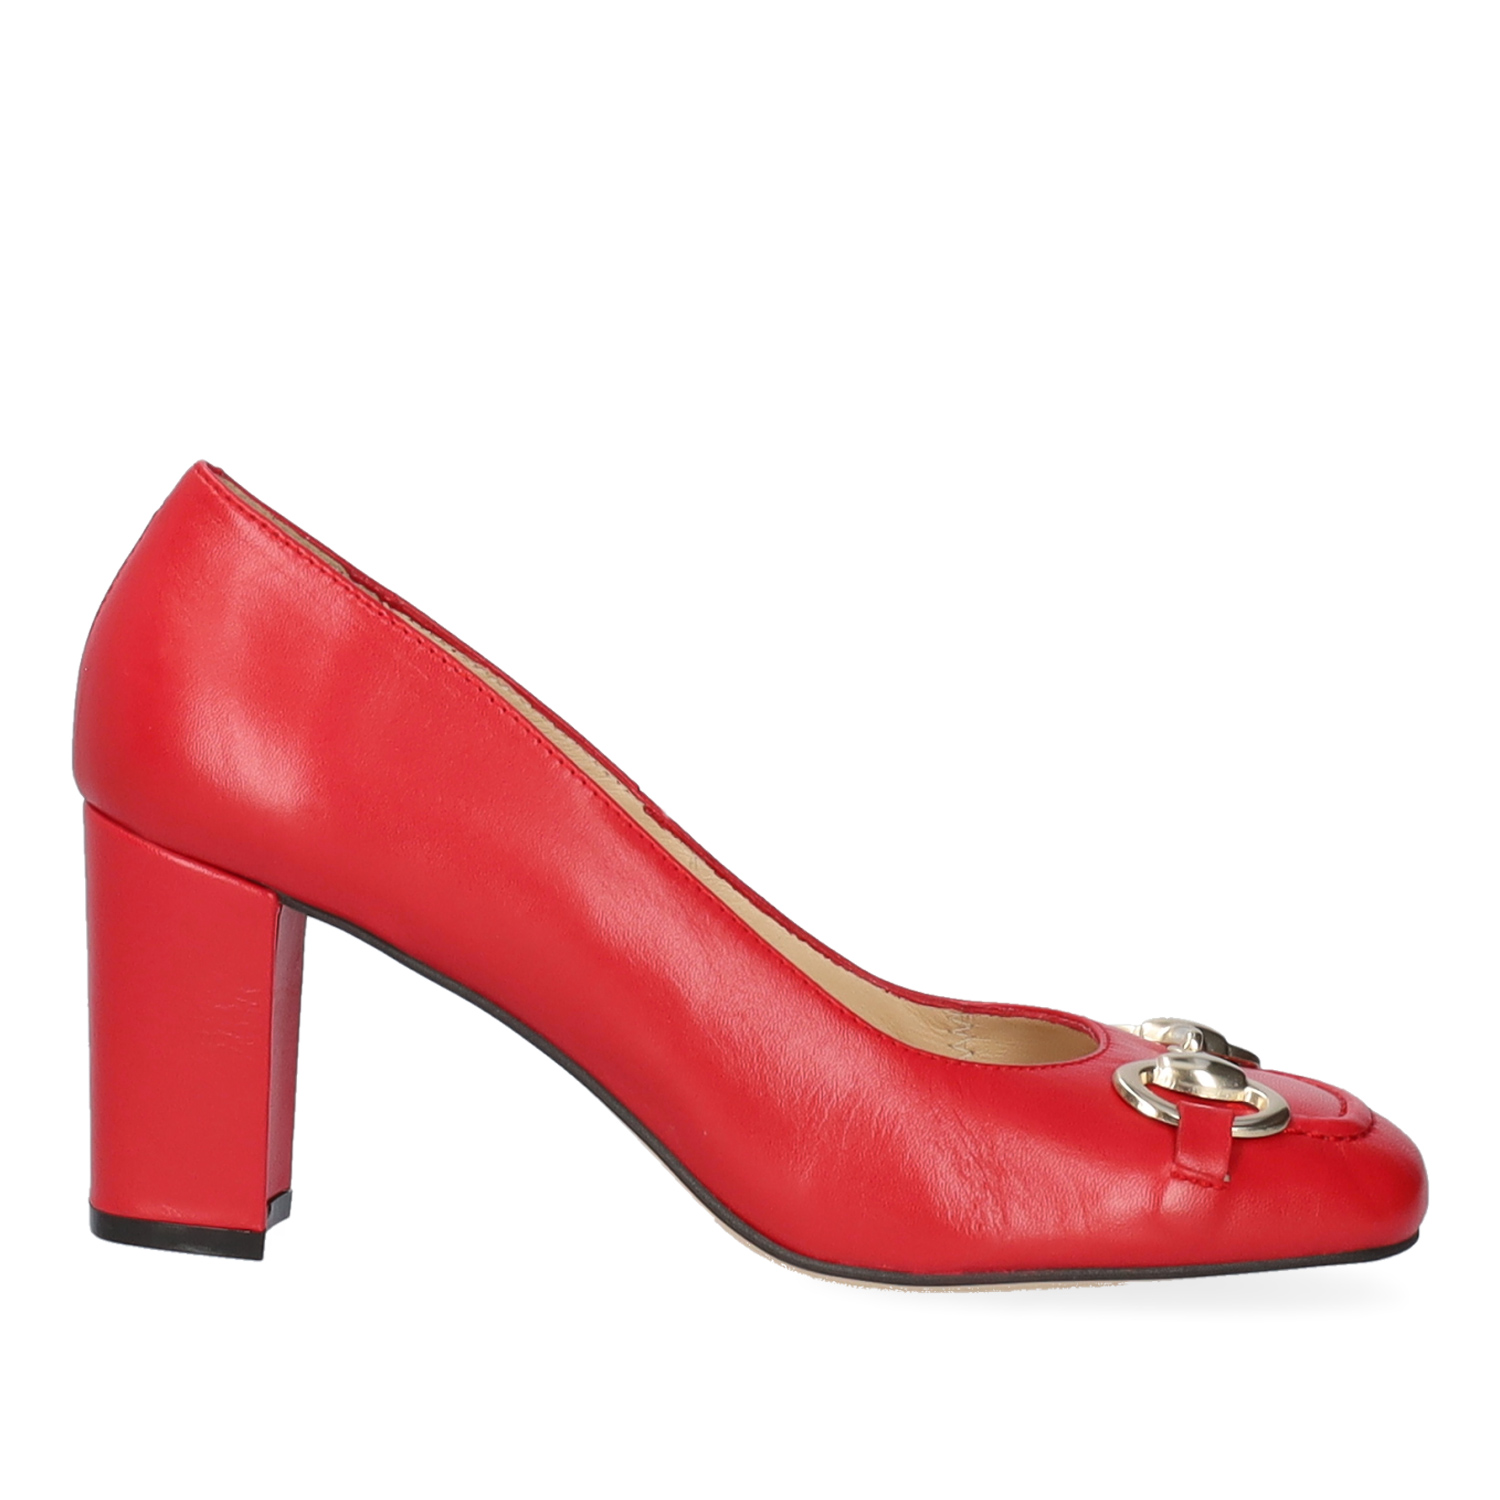 Chaussures talons en cuir rouge de style vintage. 